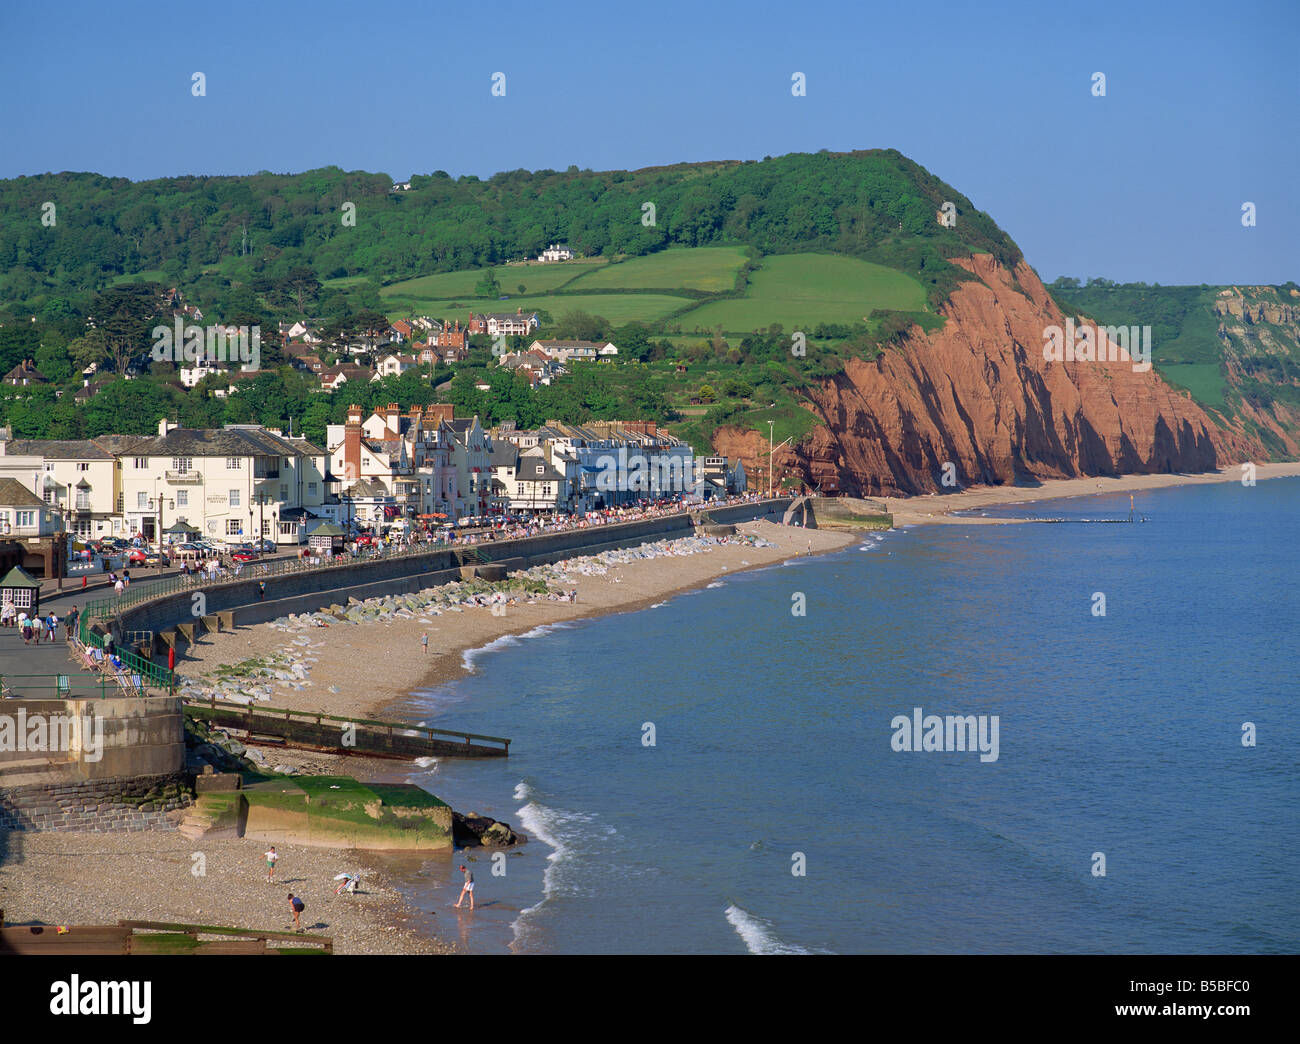 Sidmouth, Devon, England, Europe Stock Photo